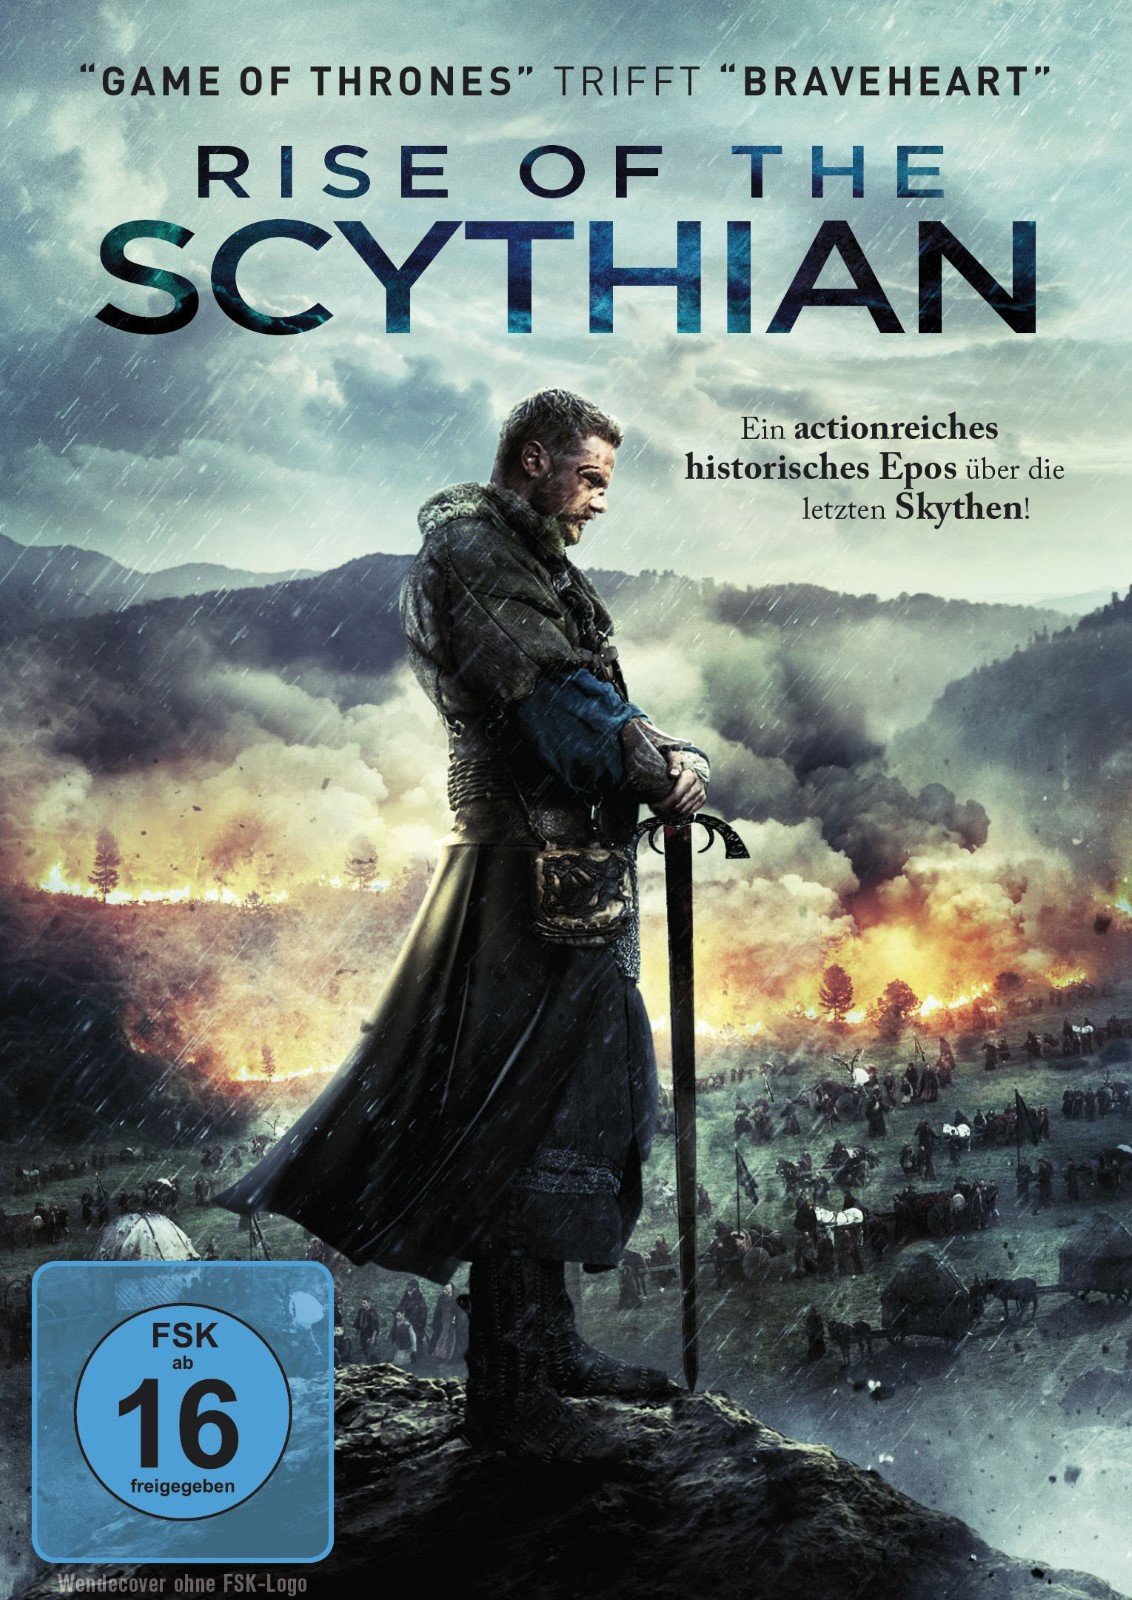 The Scythian